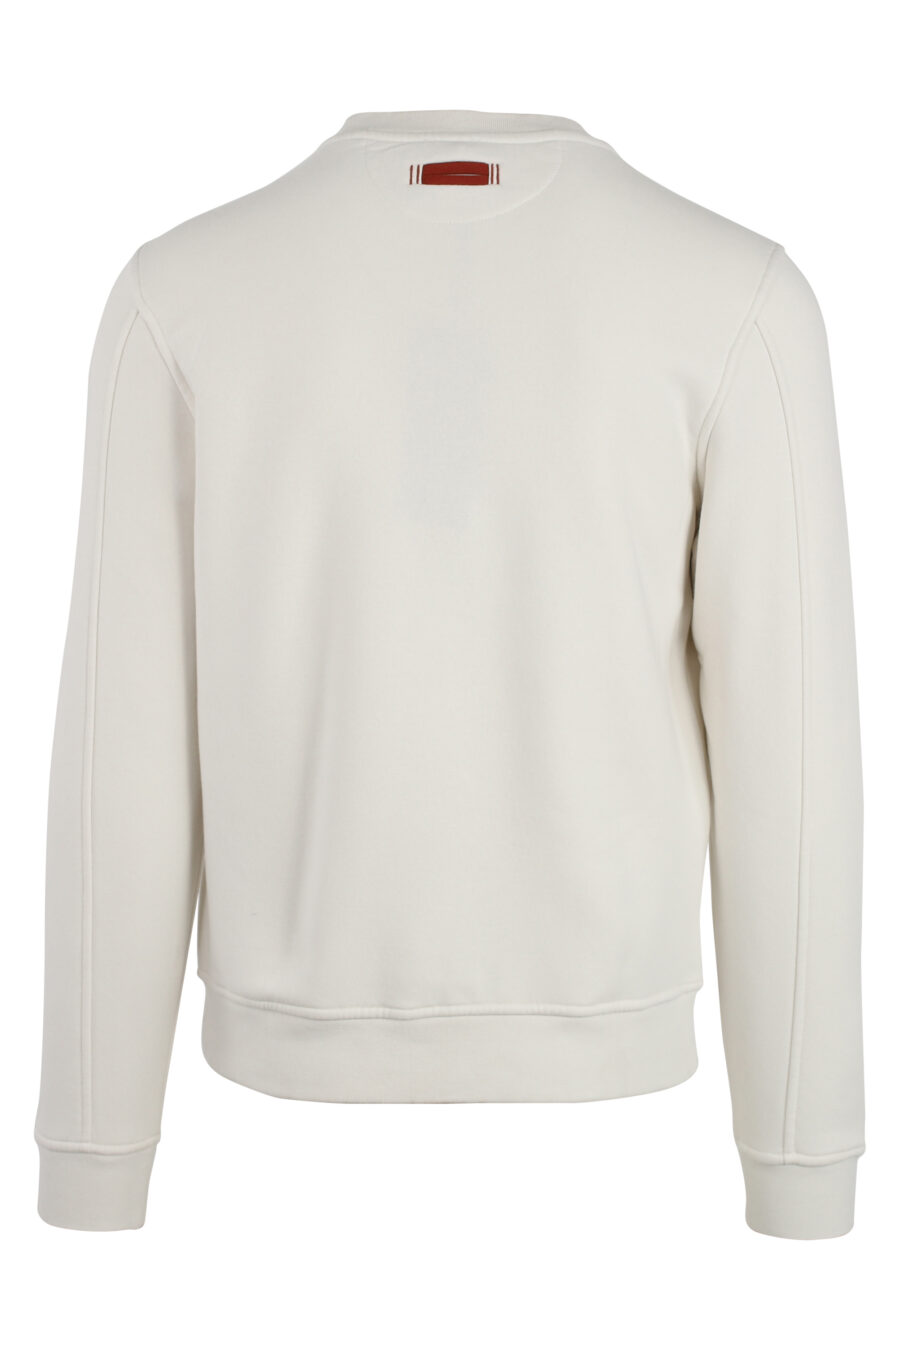 Weißes Sweatshirt mit Logo-Mix mittig - IMG 4791